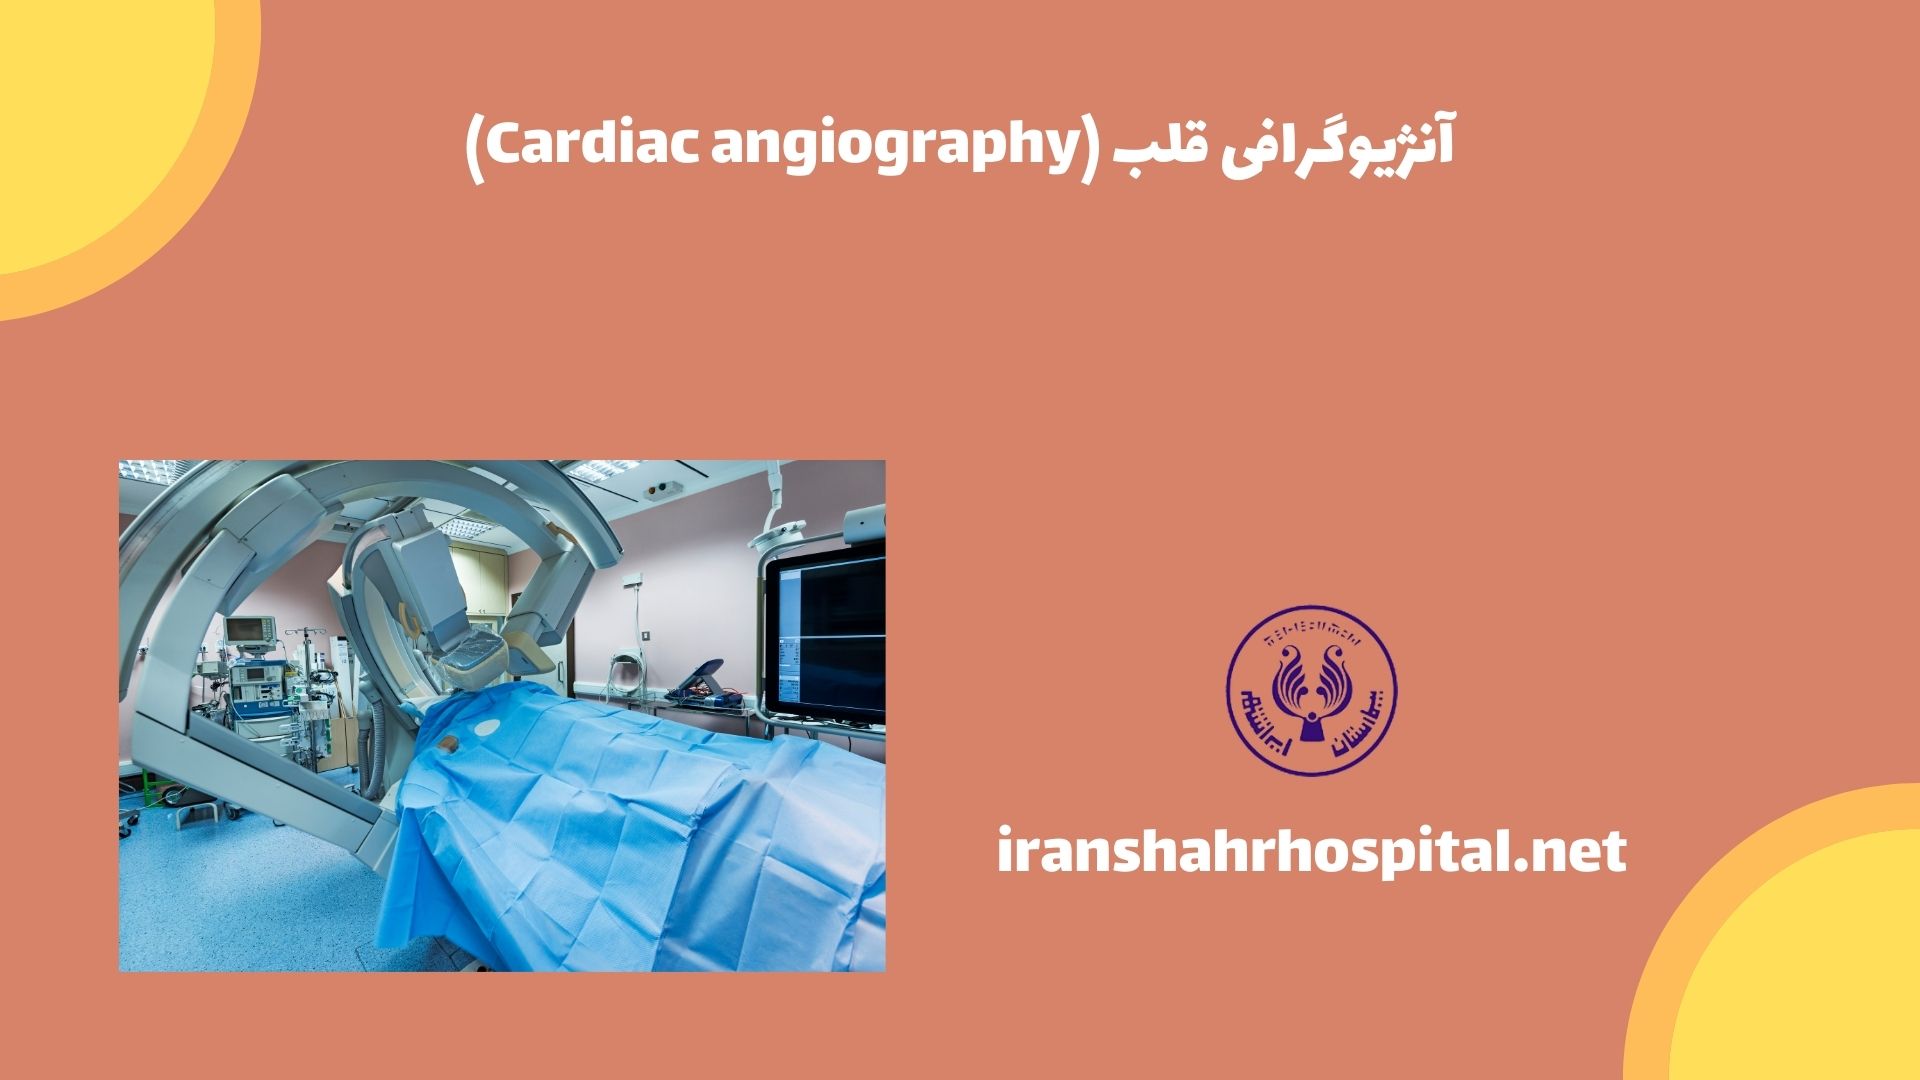 آنژیوگرافی قلب (Cardiac angiography)